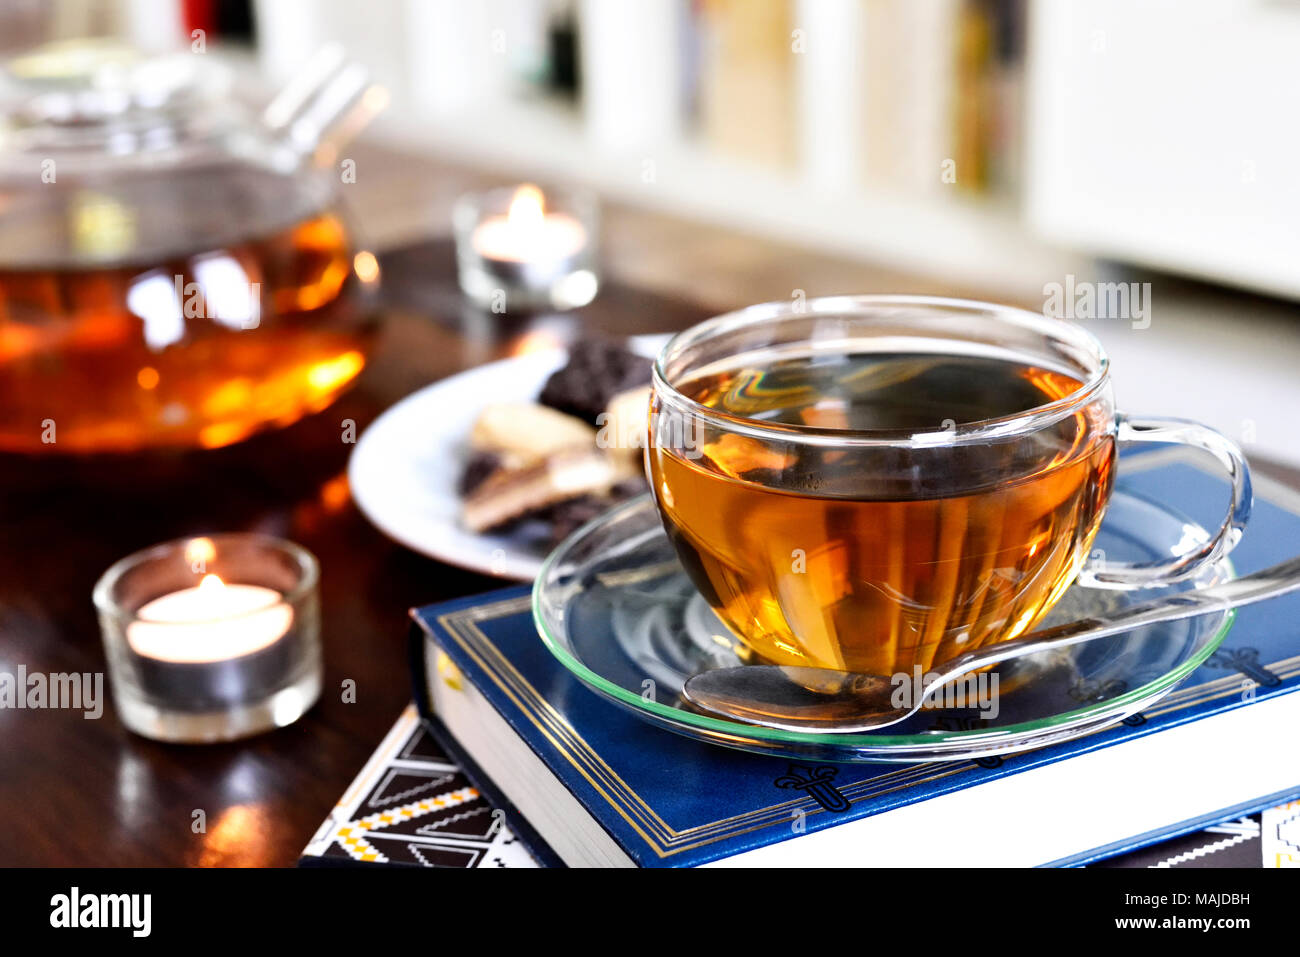 Teatime Szene mit Glas Teekanne und Tasse Tee, altes Buch und heißen Dampf. Idyllische Tea Time oder Entspannung Szene mit Plätzchen und Kerzen. Stockfoto